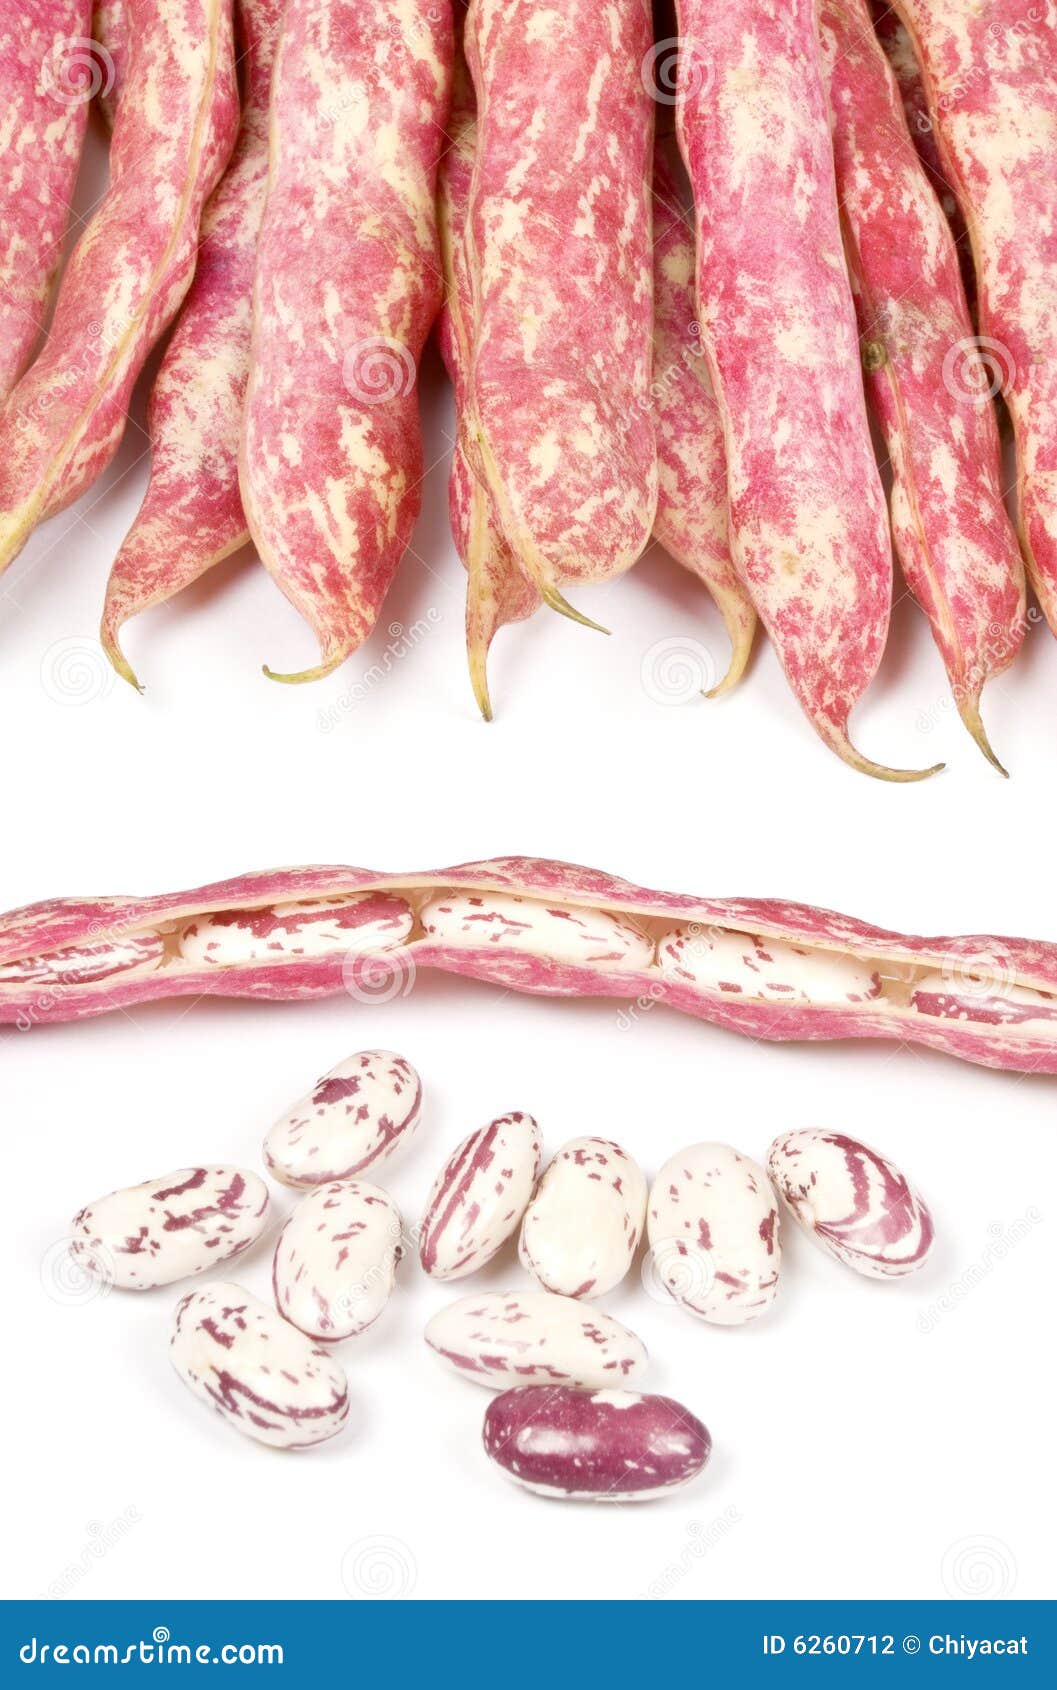 romano beans  on white